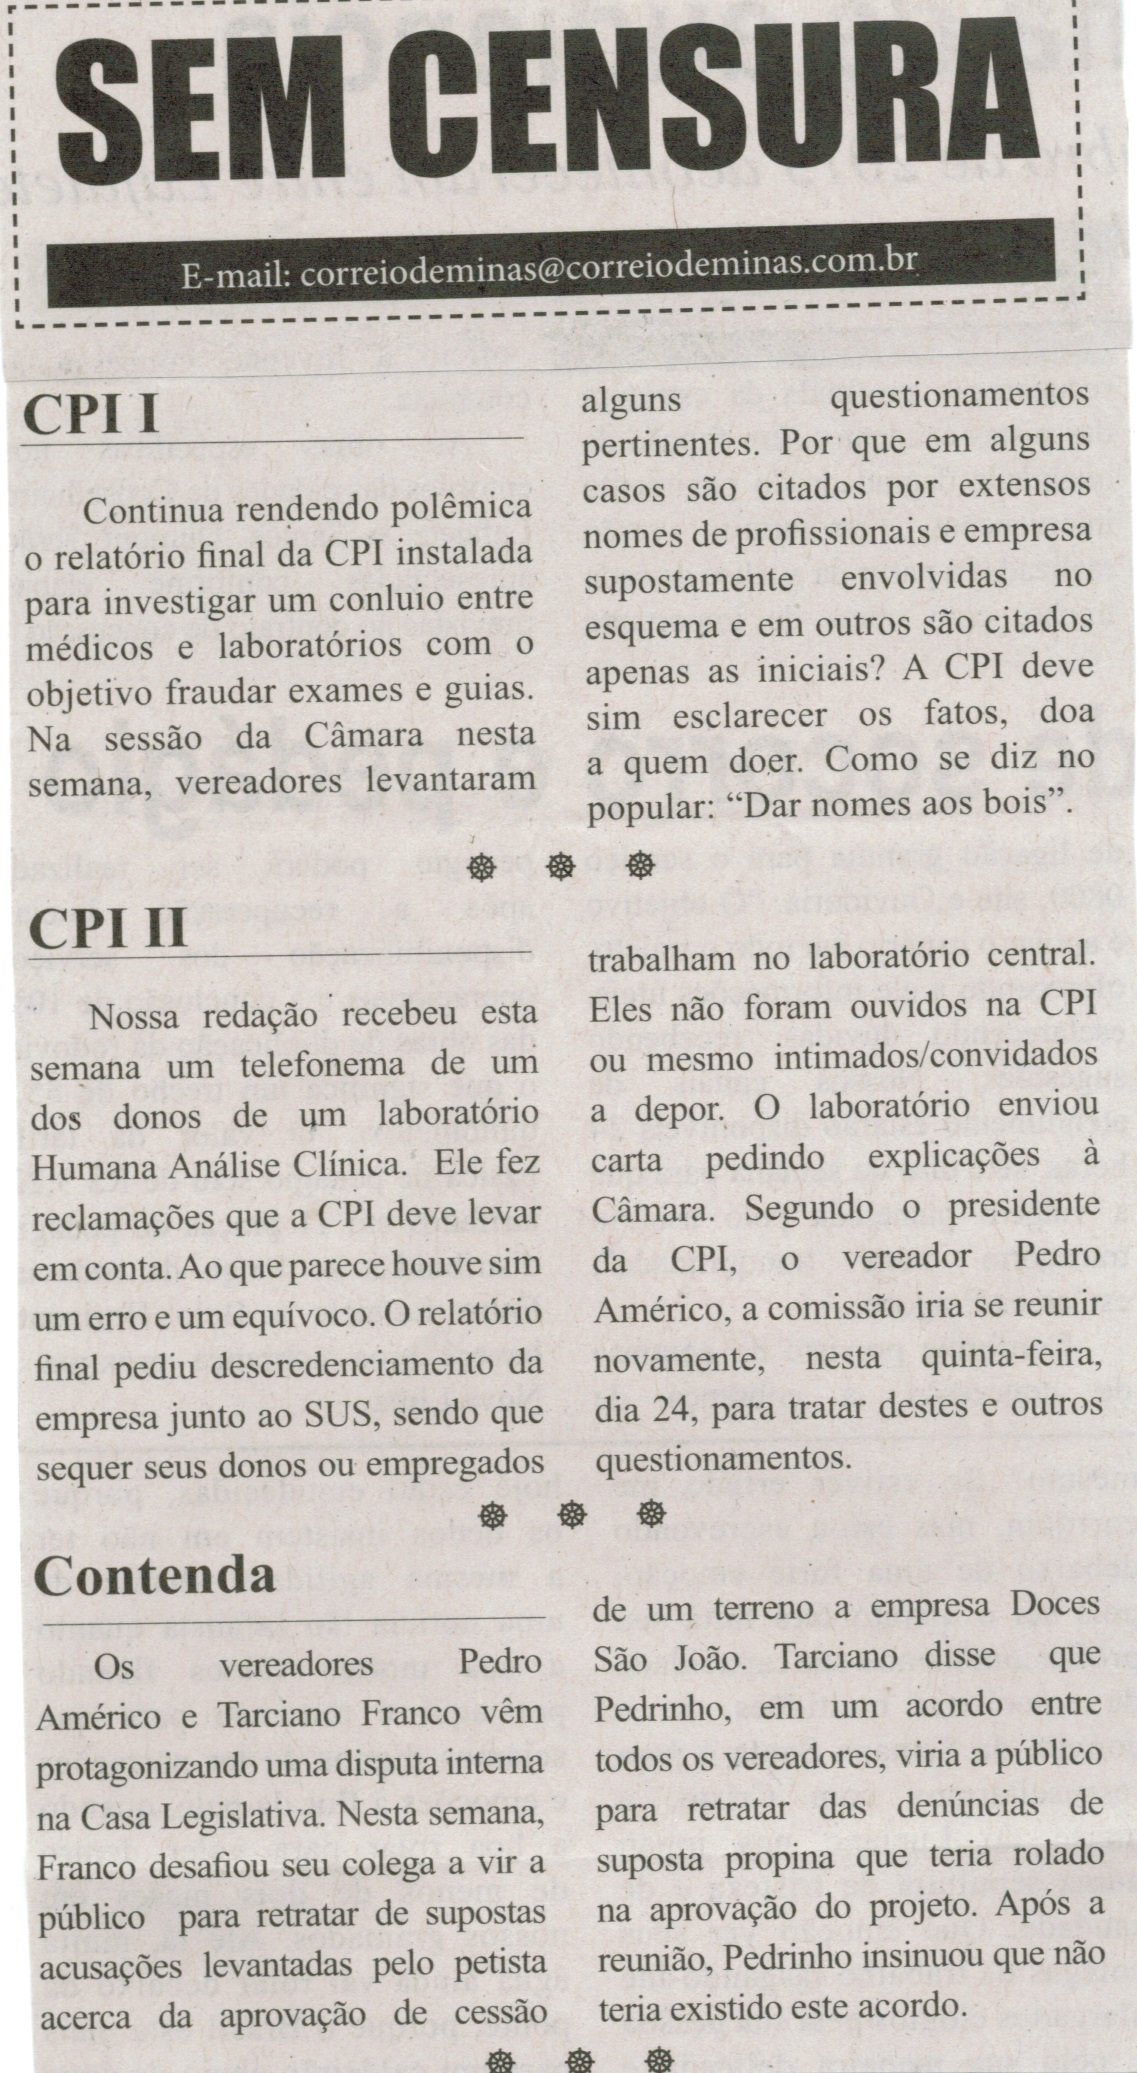 CPI I; CPI II; Contenda. Correio de Minas, Conselheiro Lafaiete, 26 mar. 2014, Sem Censura, p. 3.